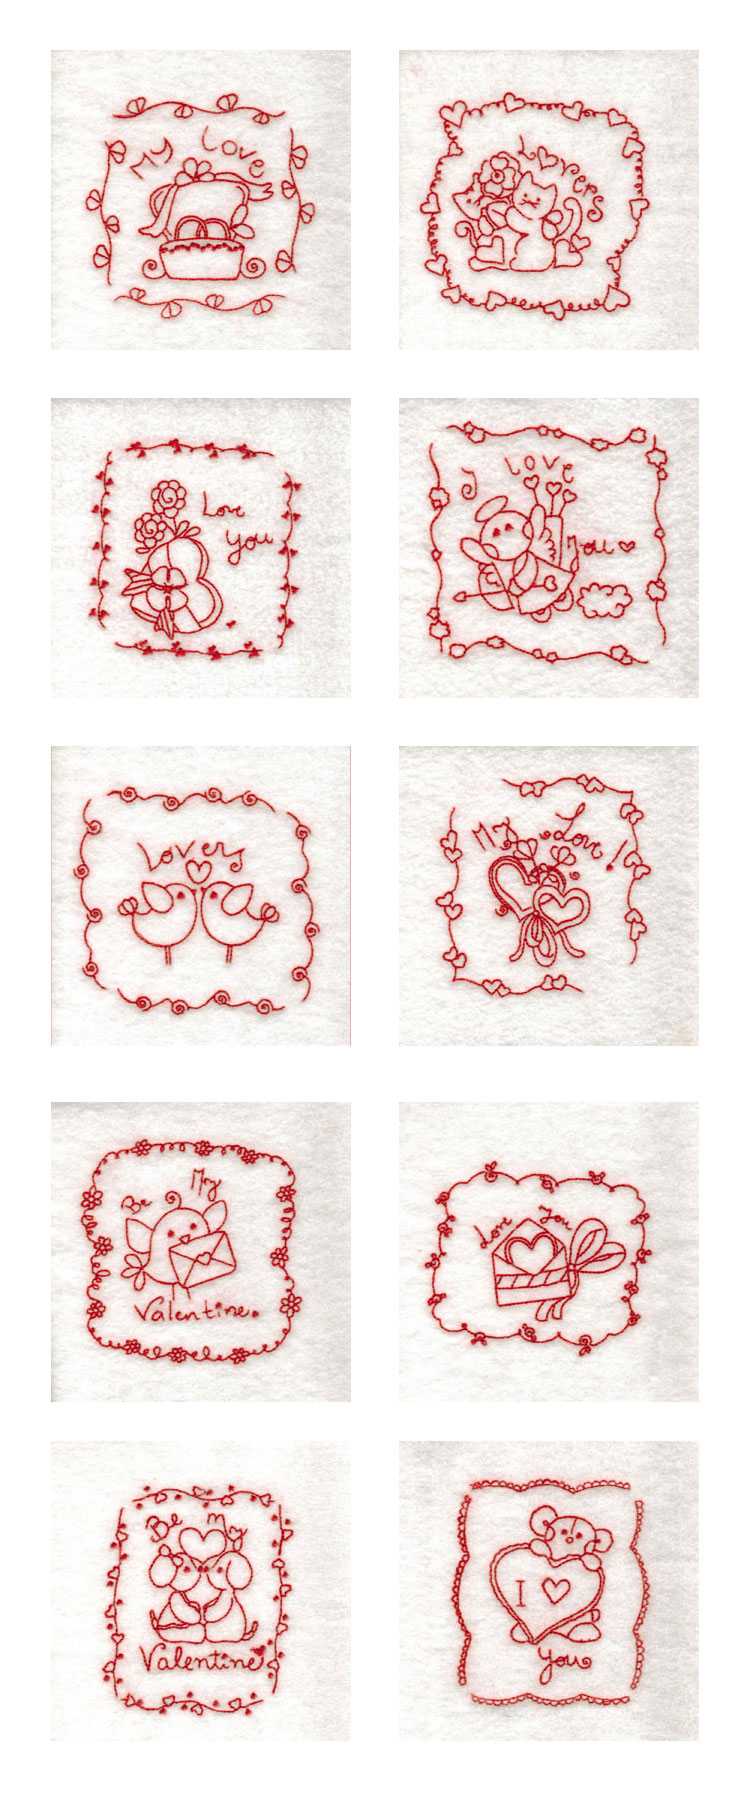 RW Valentine Blocks Embroidery Machine Design Details